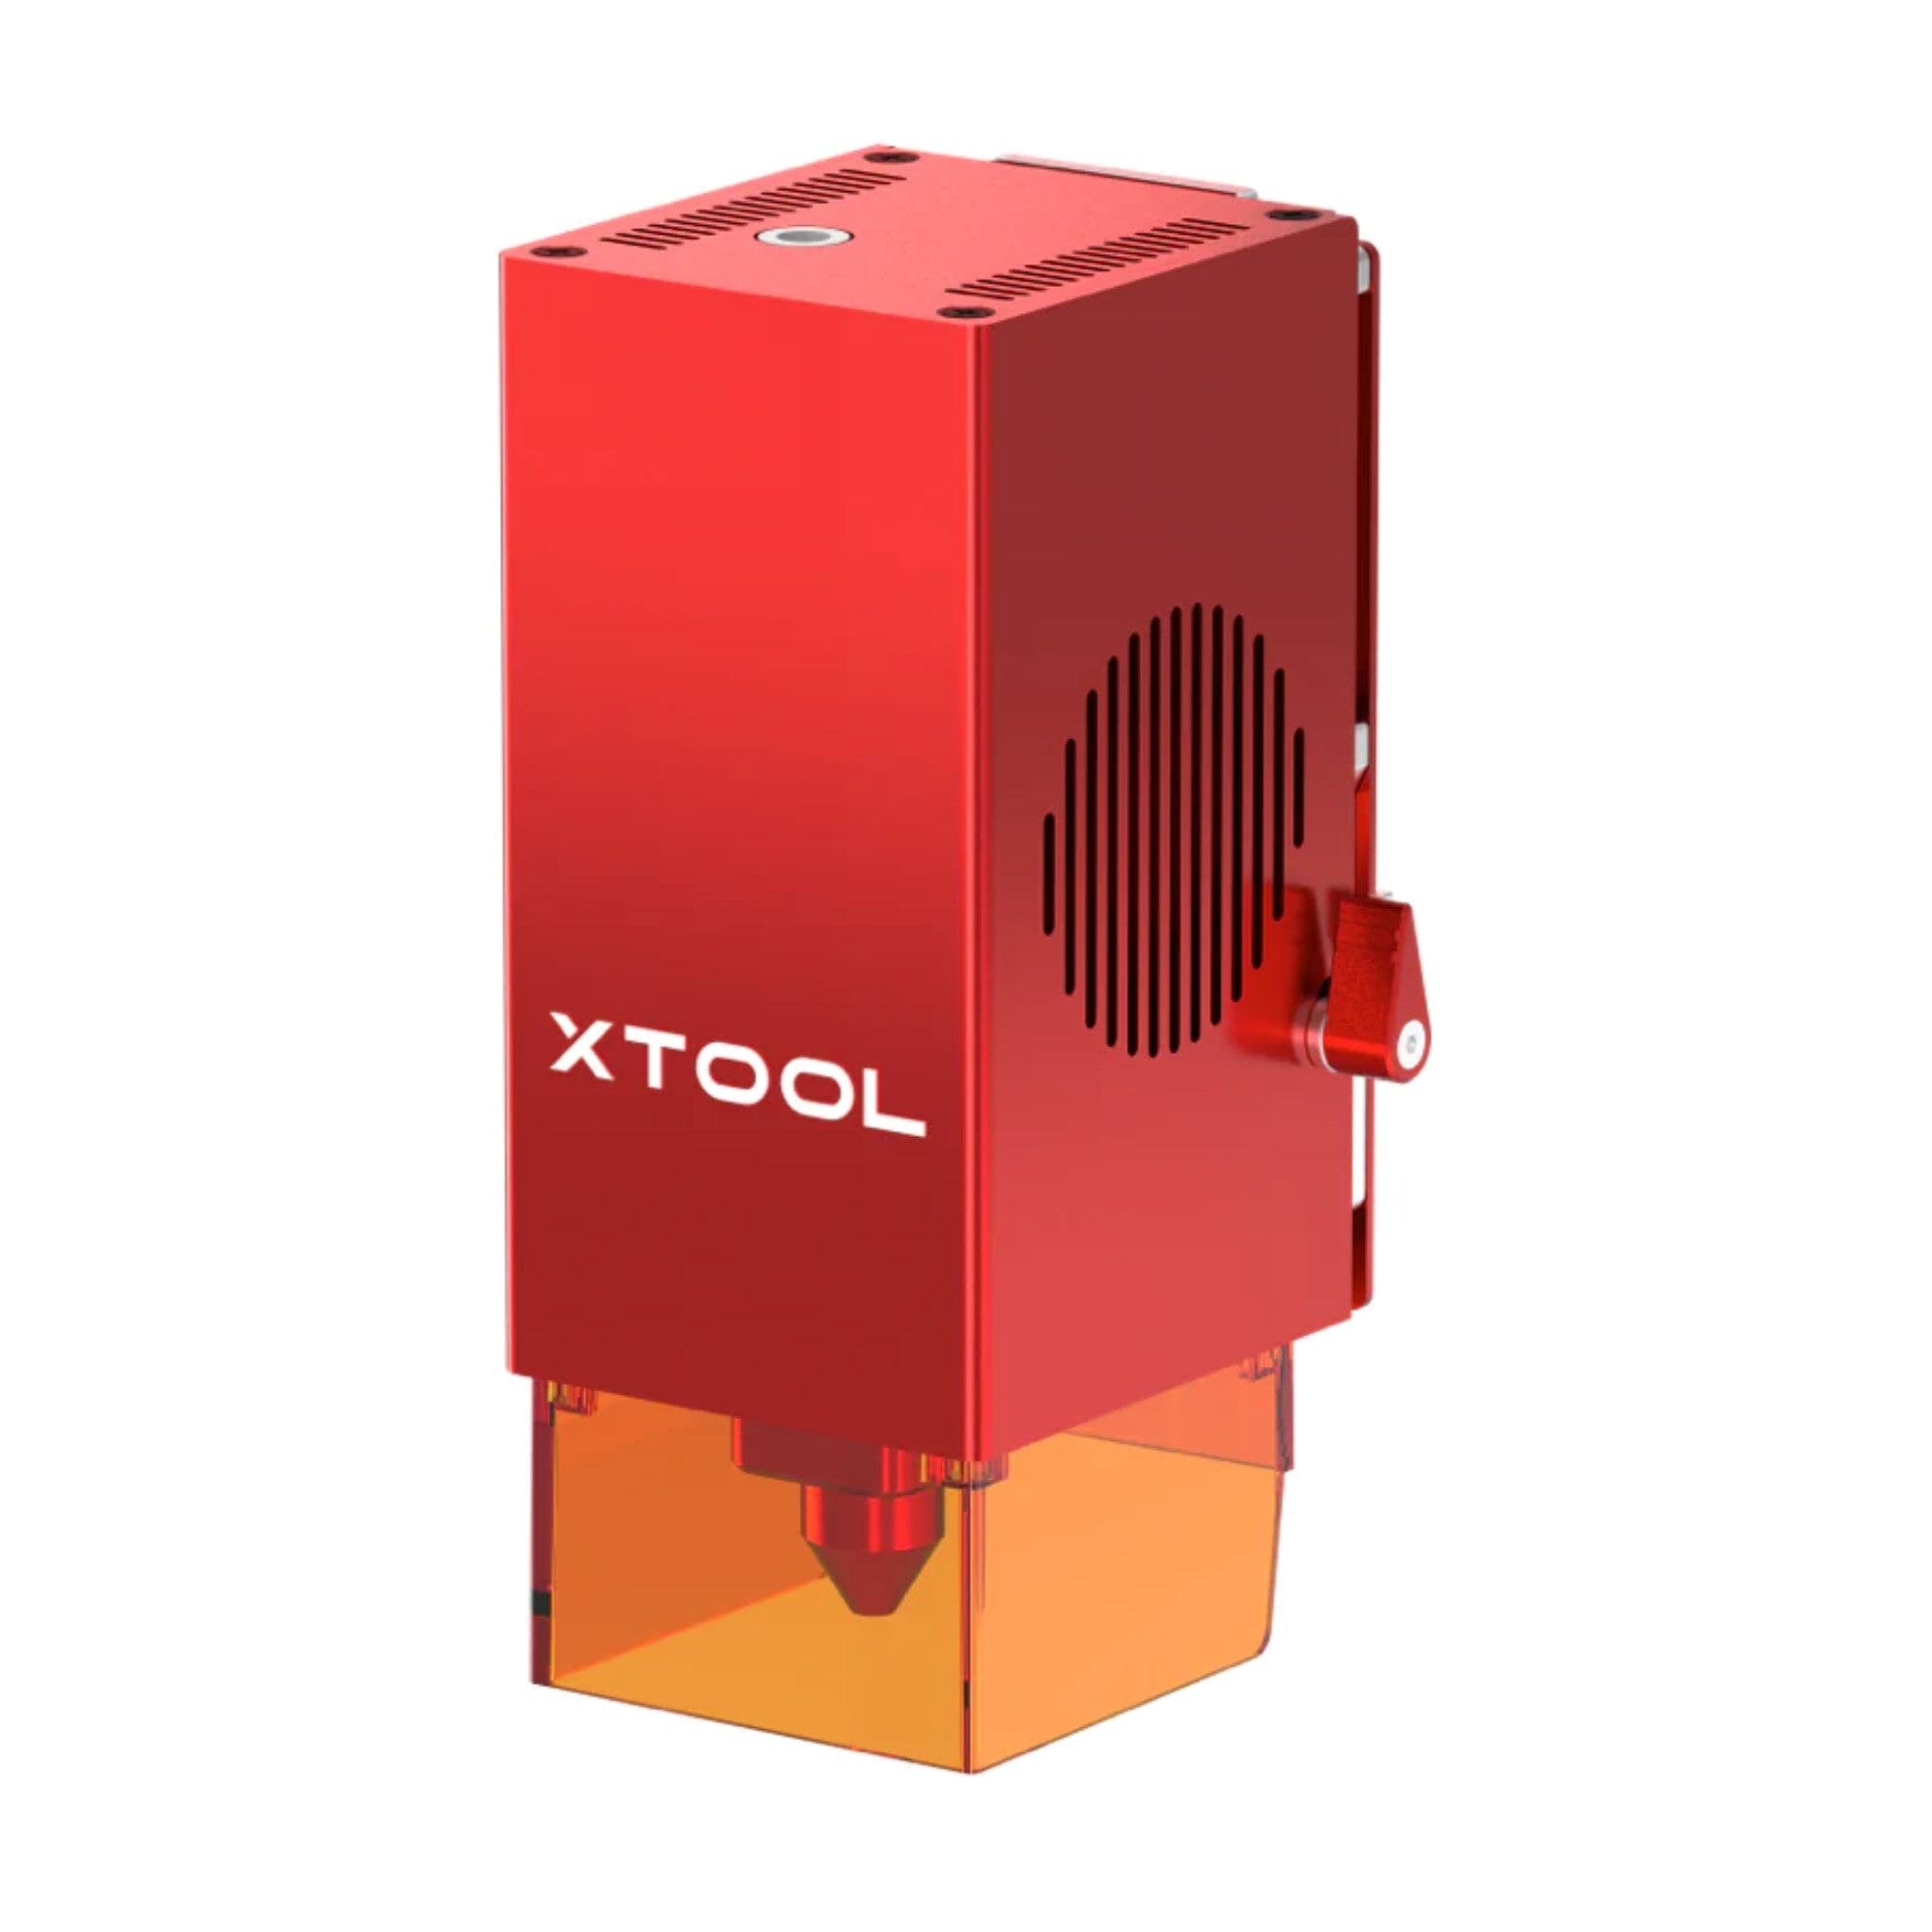 xTool Laser Screen Printing Kit - Single Frame Bundle